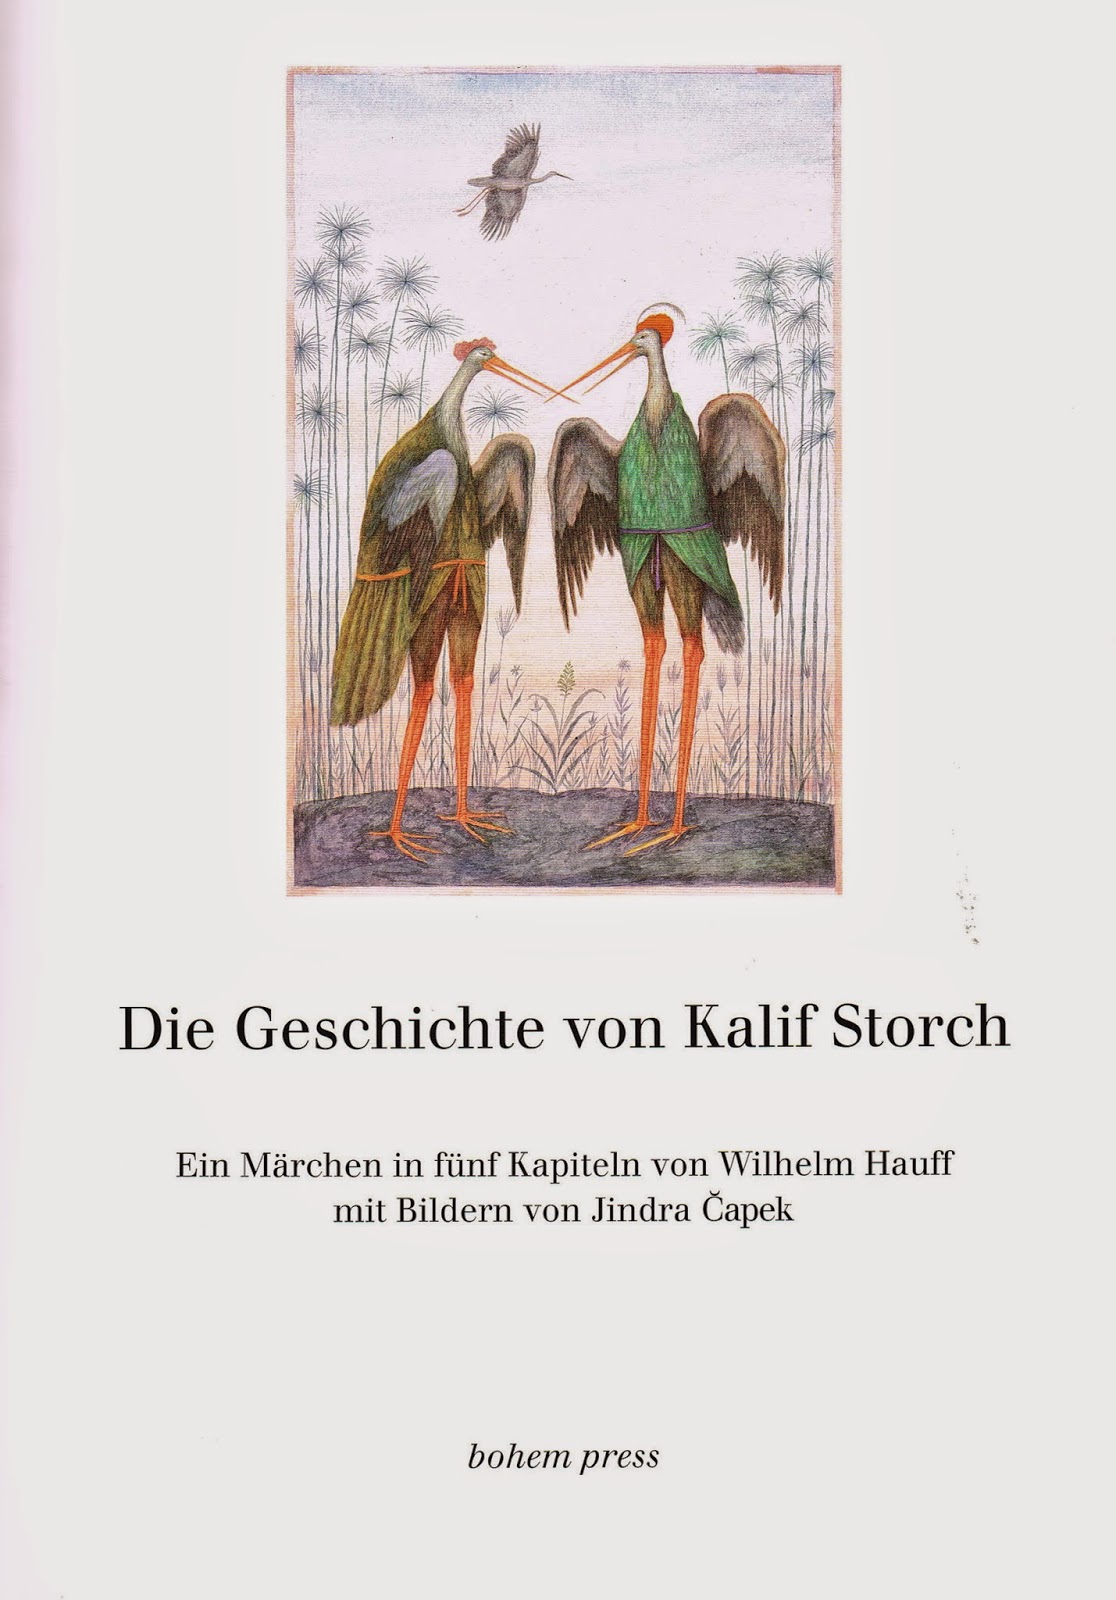 children's book illustrations: Hauff, Wilhelm; Kalif Storch; ill. Jindra Capek; Bohem ...1116 x 1600